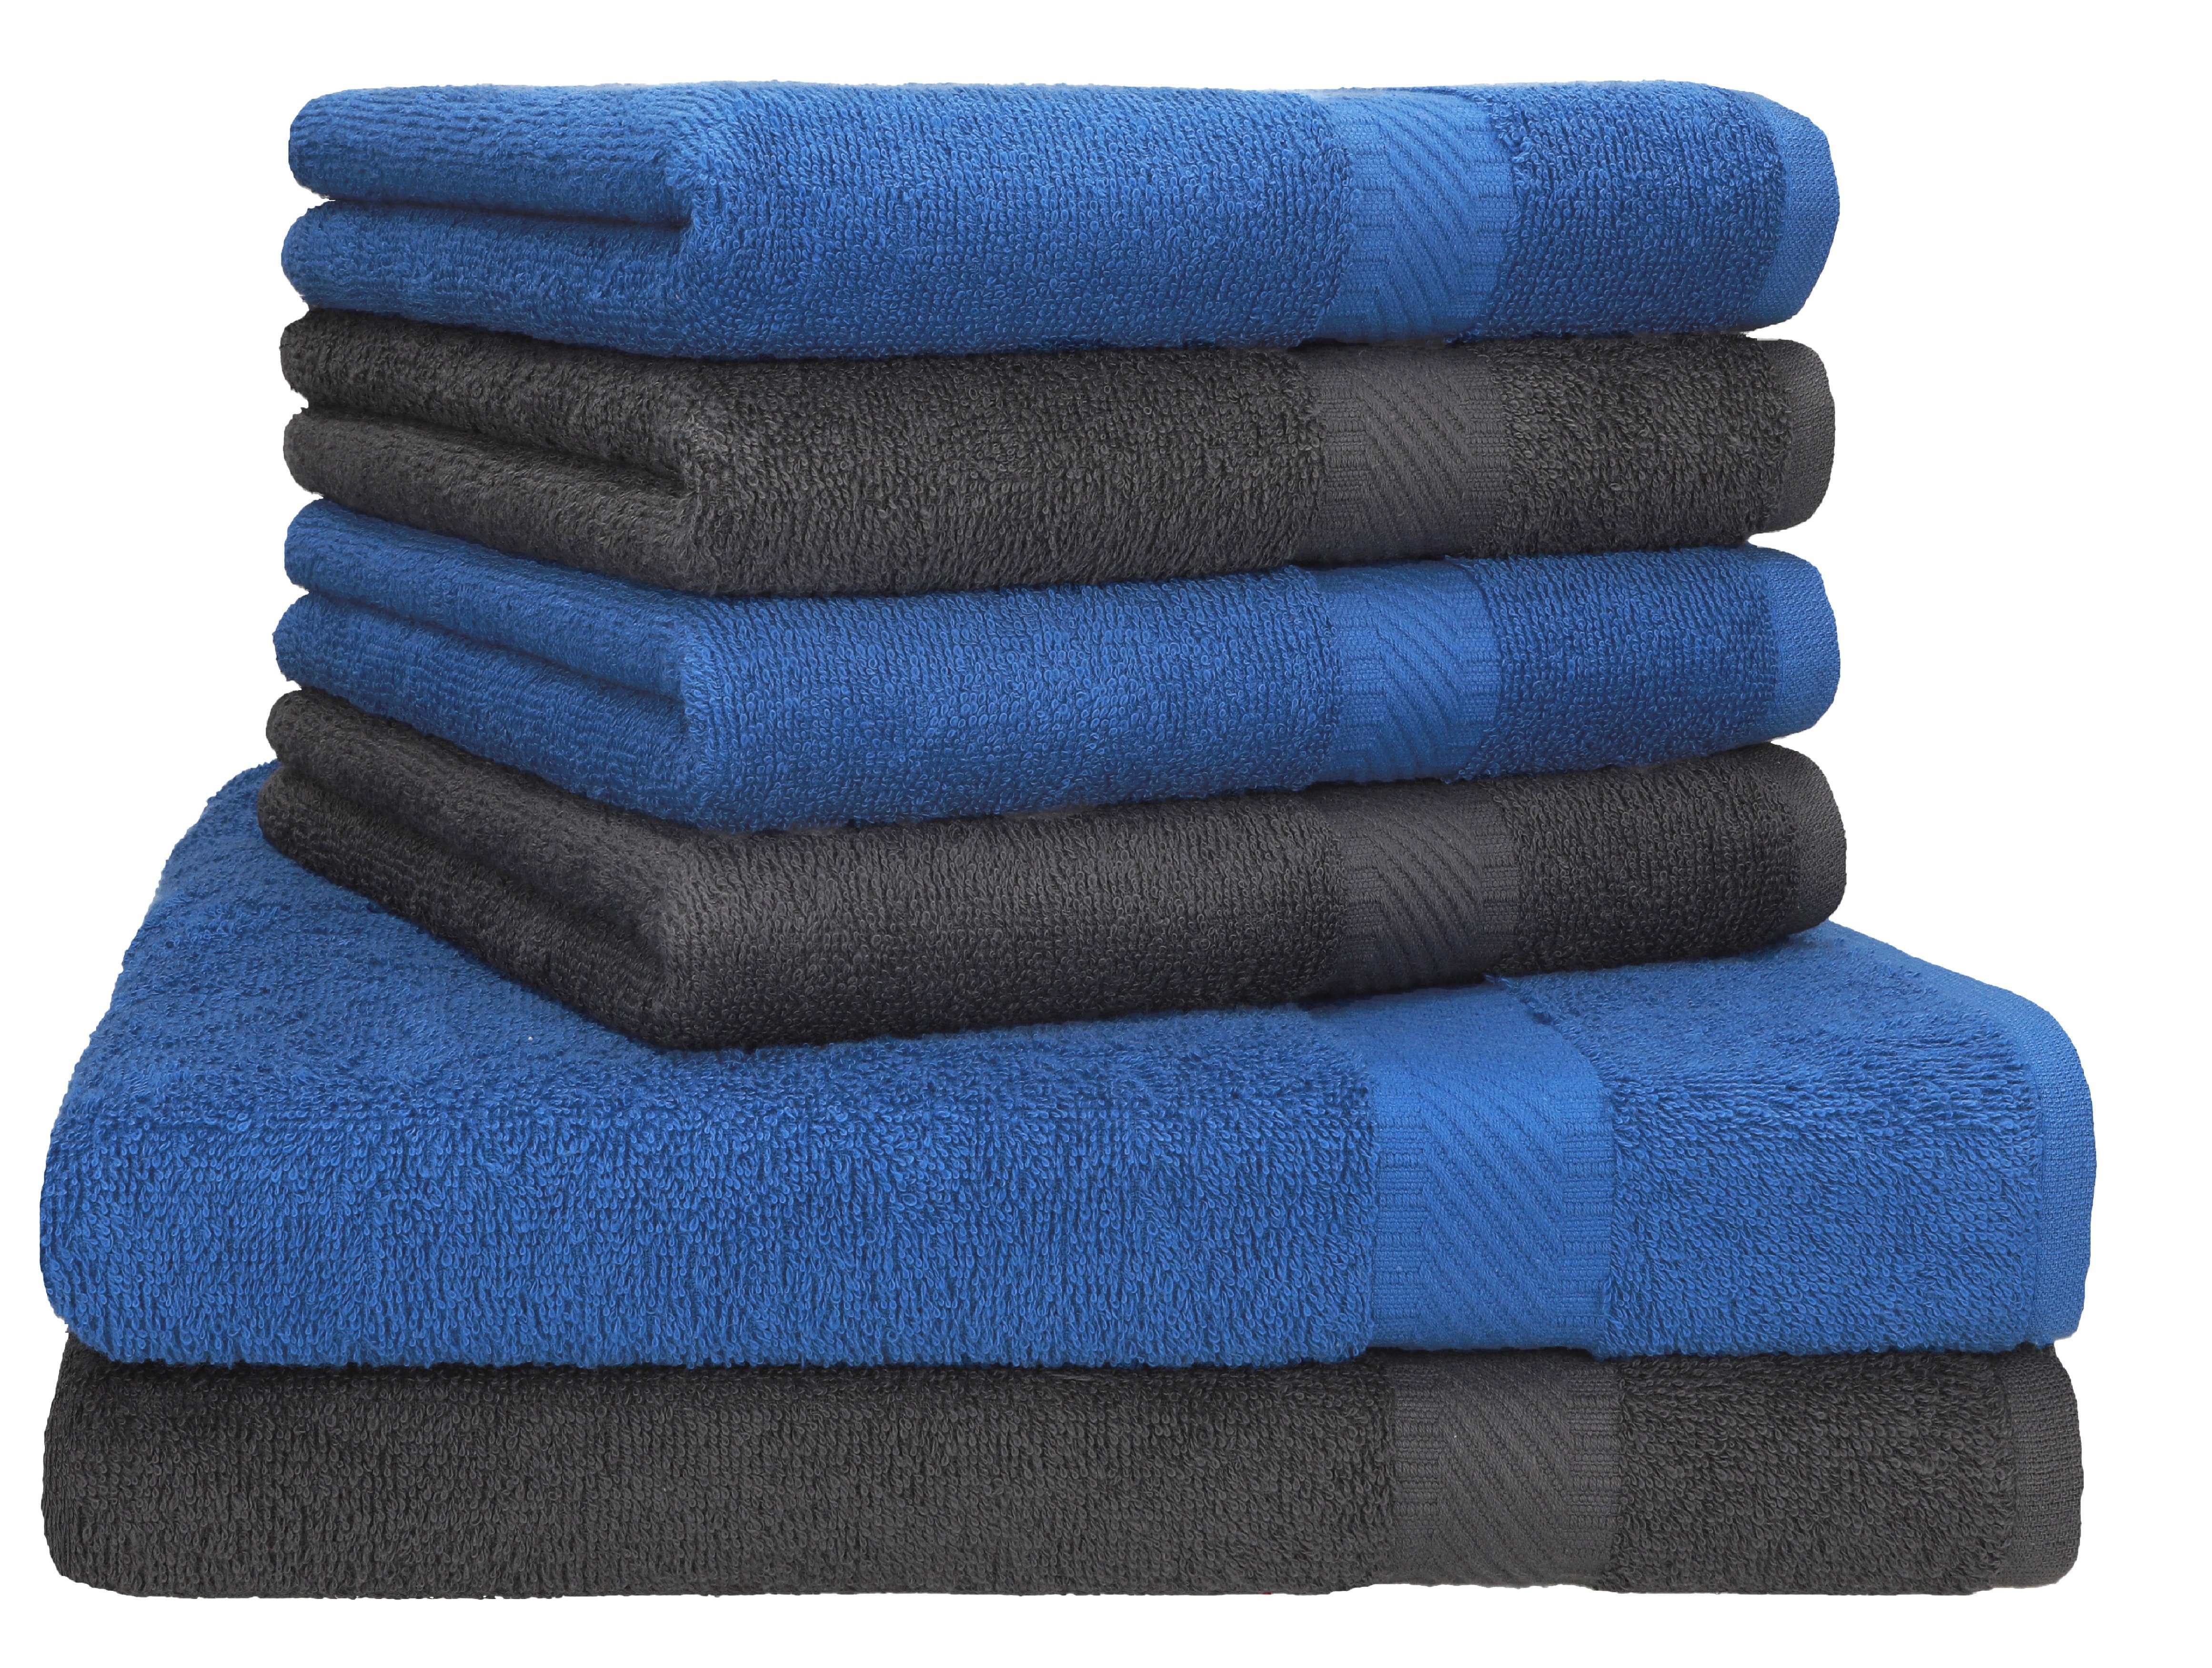 Betz Handtuch Set Palermo 6er 2x Liegetücher 70x140 cm 4x Handtücher, 100% Baumwolle anthrazit/blau